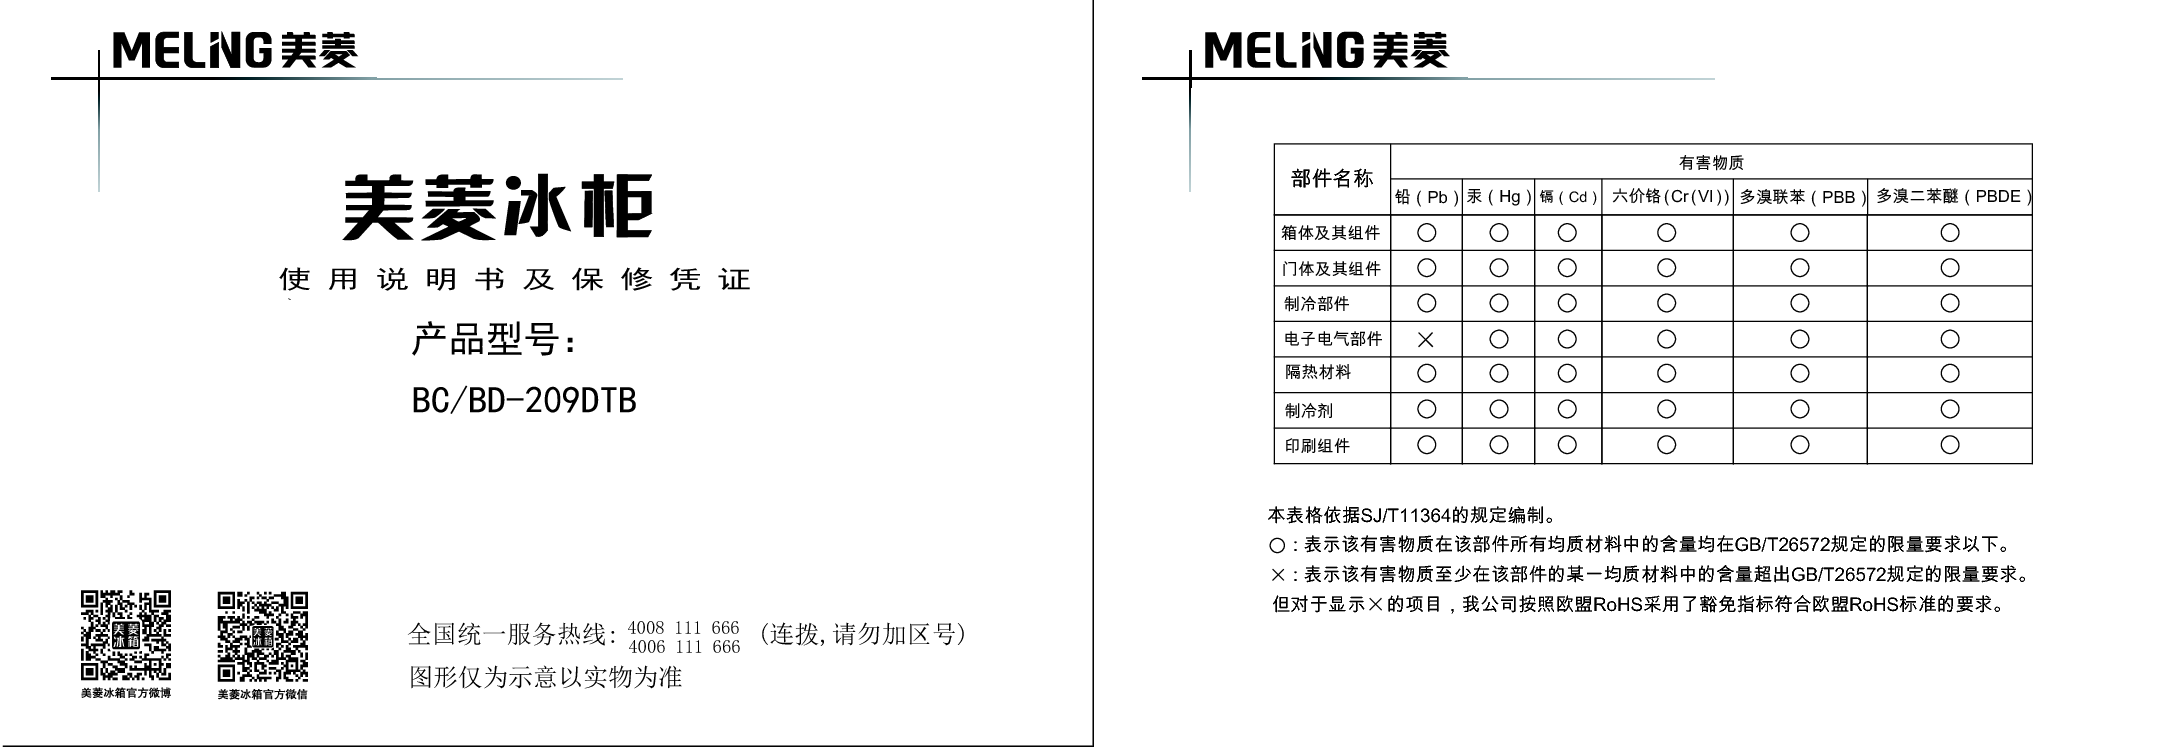 美菱 Meiling BC/BD-209DTB 使用说明书 封面